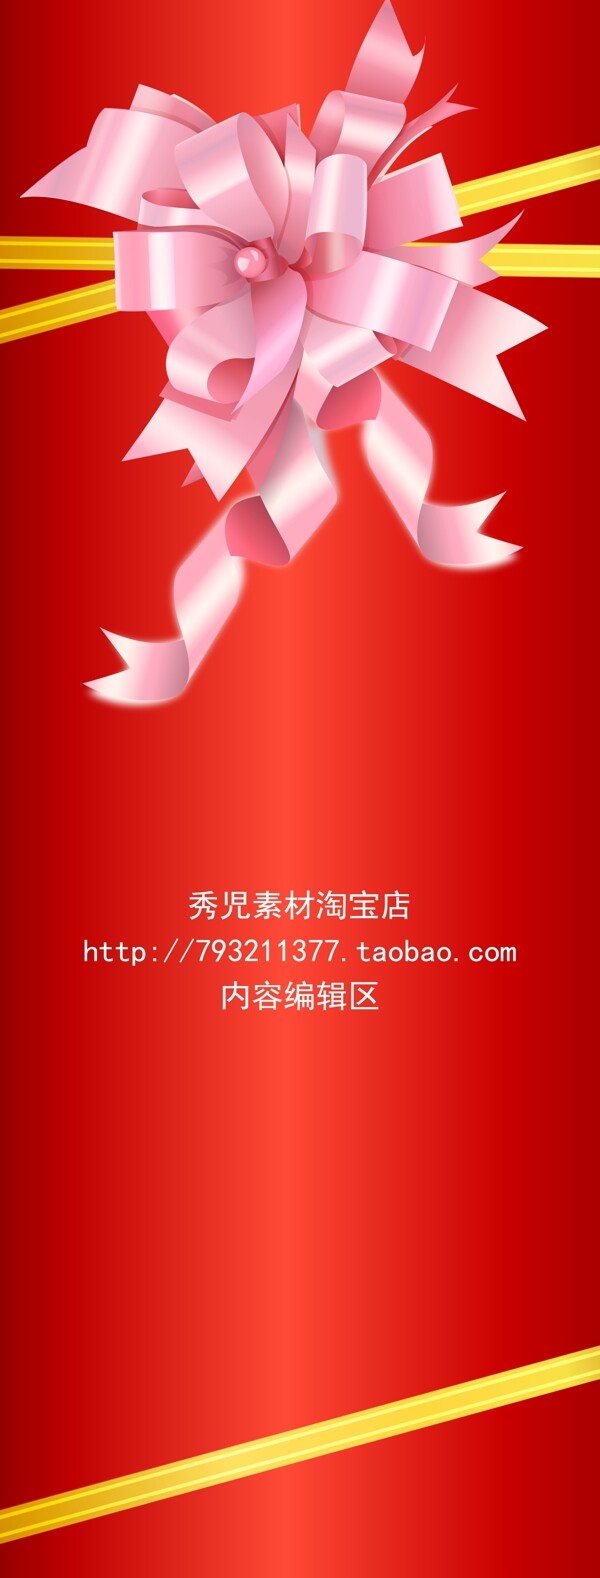 精美粉色中国结展架设计模板画面海报